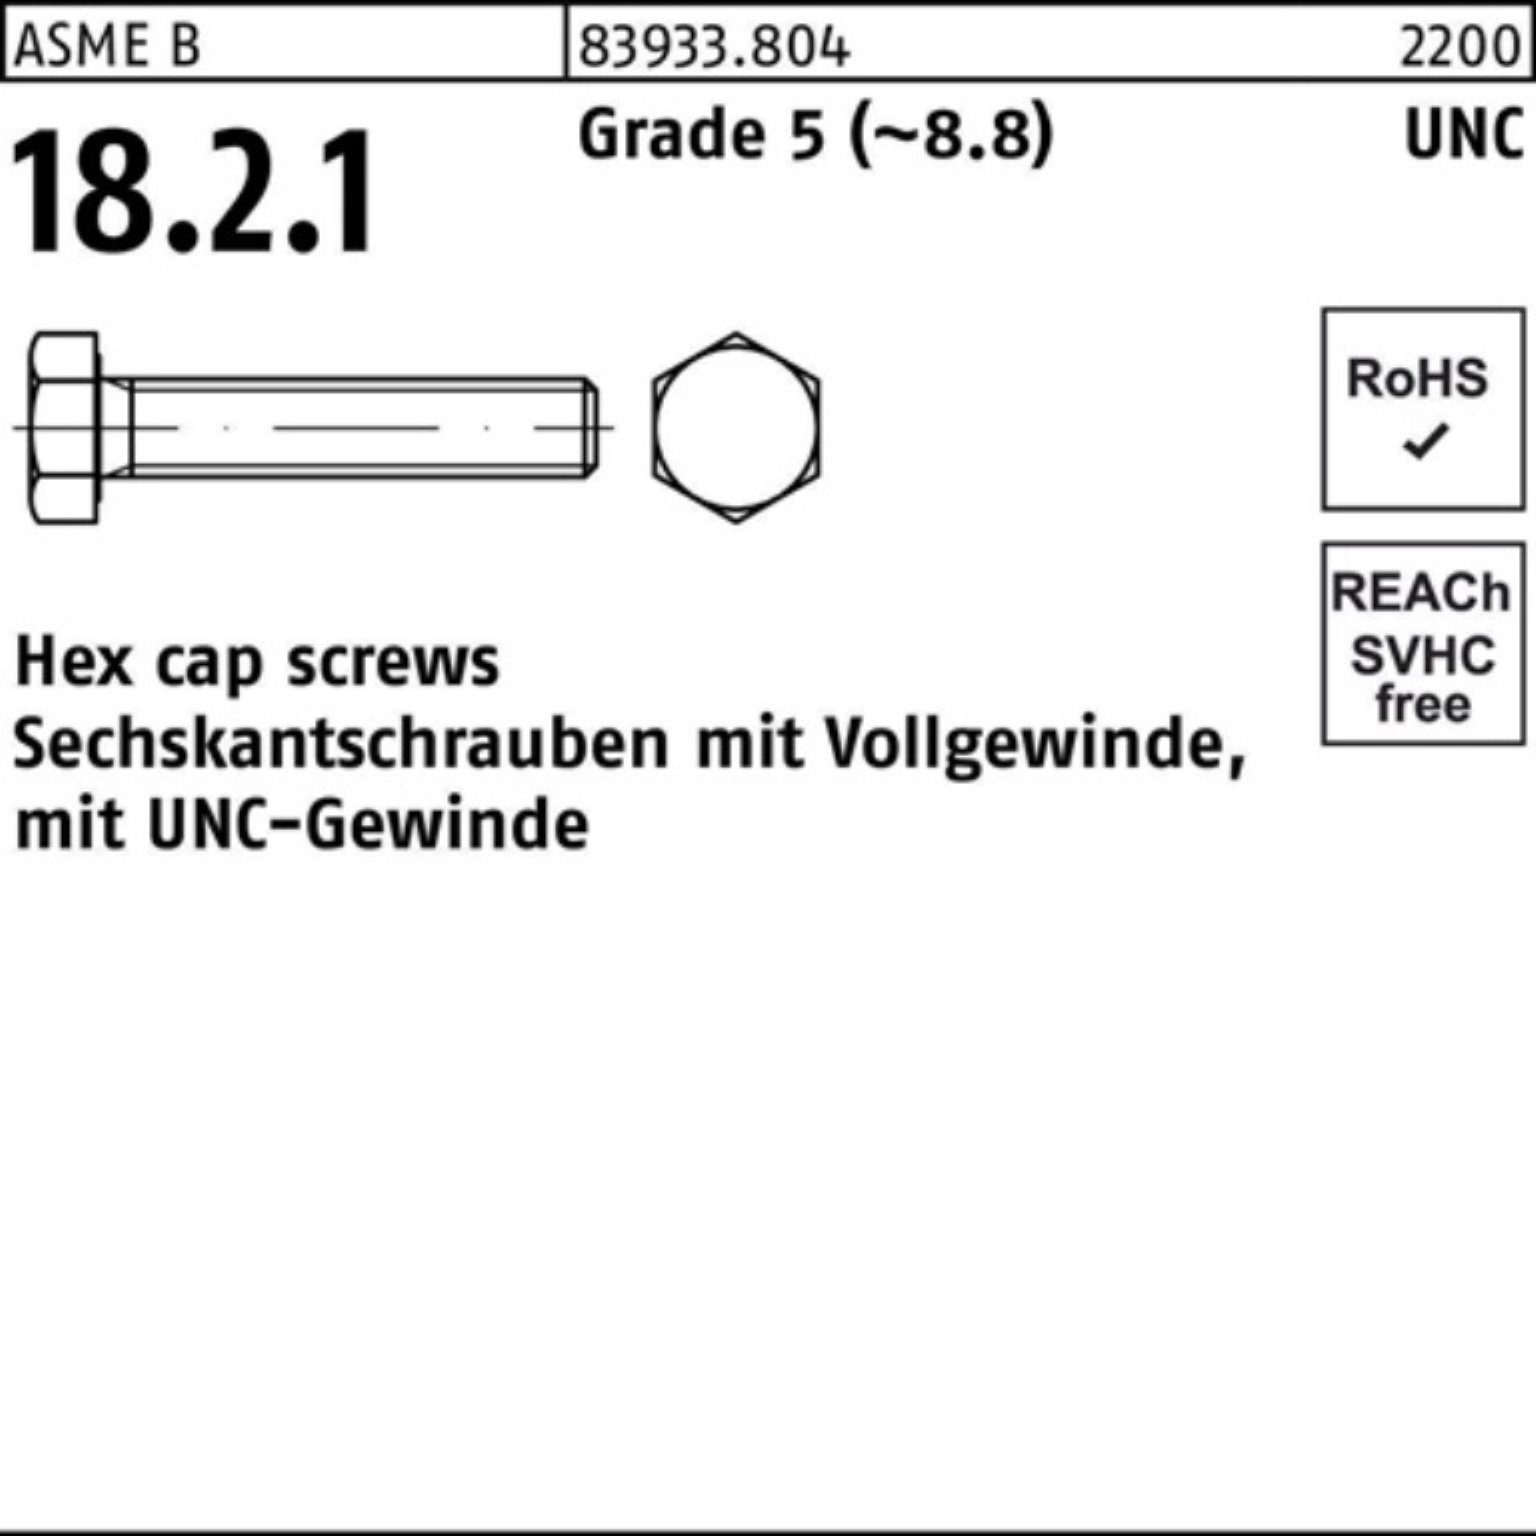 Reyher Sechskantschraube 100er Pack Sechskantschraube R 83933 UNC-Gewinde VG 1/4x 3/4 Grade 5